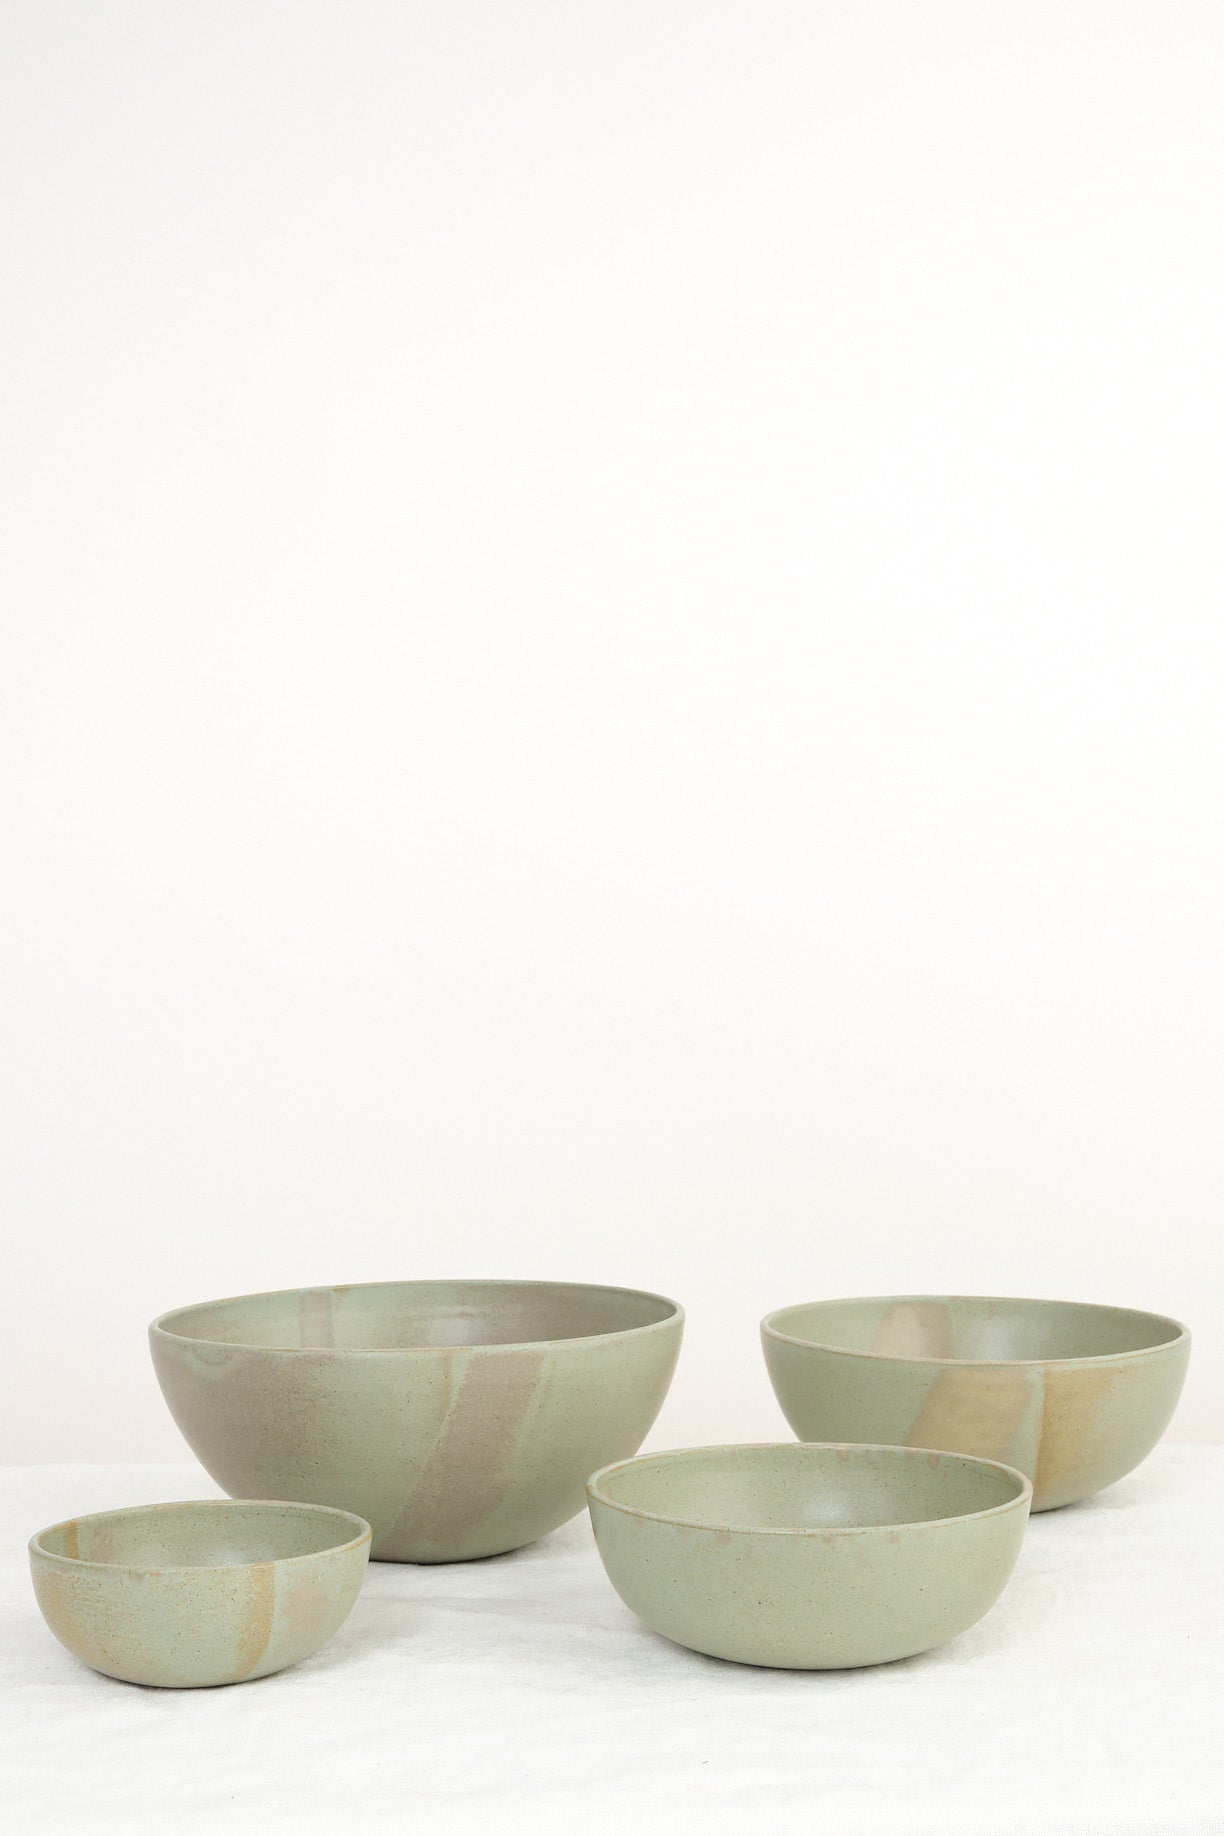 Kati Von Lehman nesting kitchen bowls